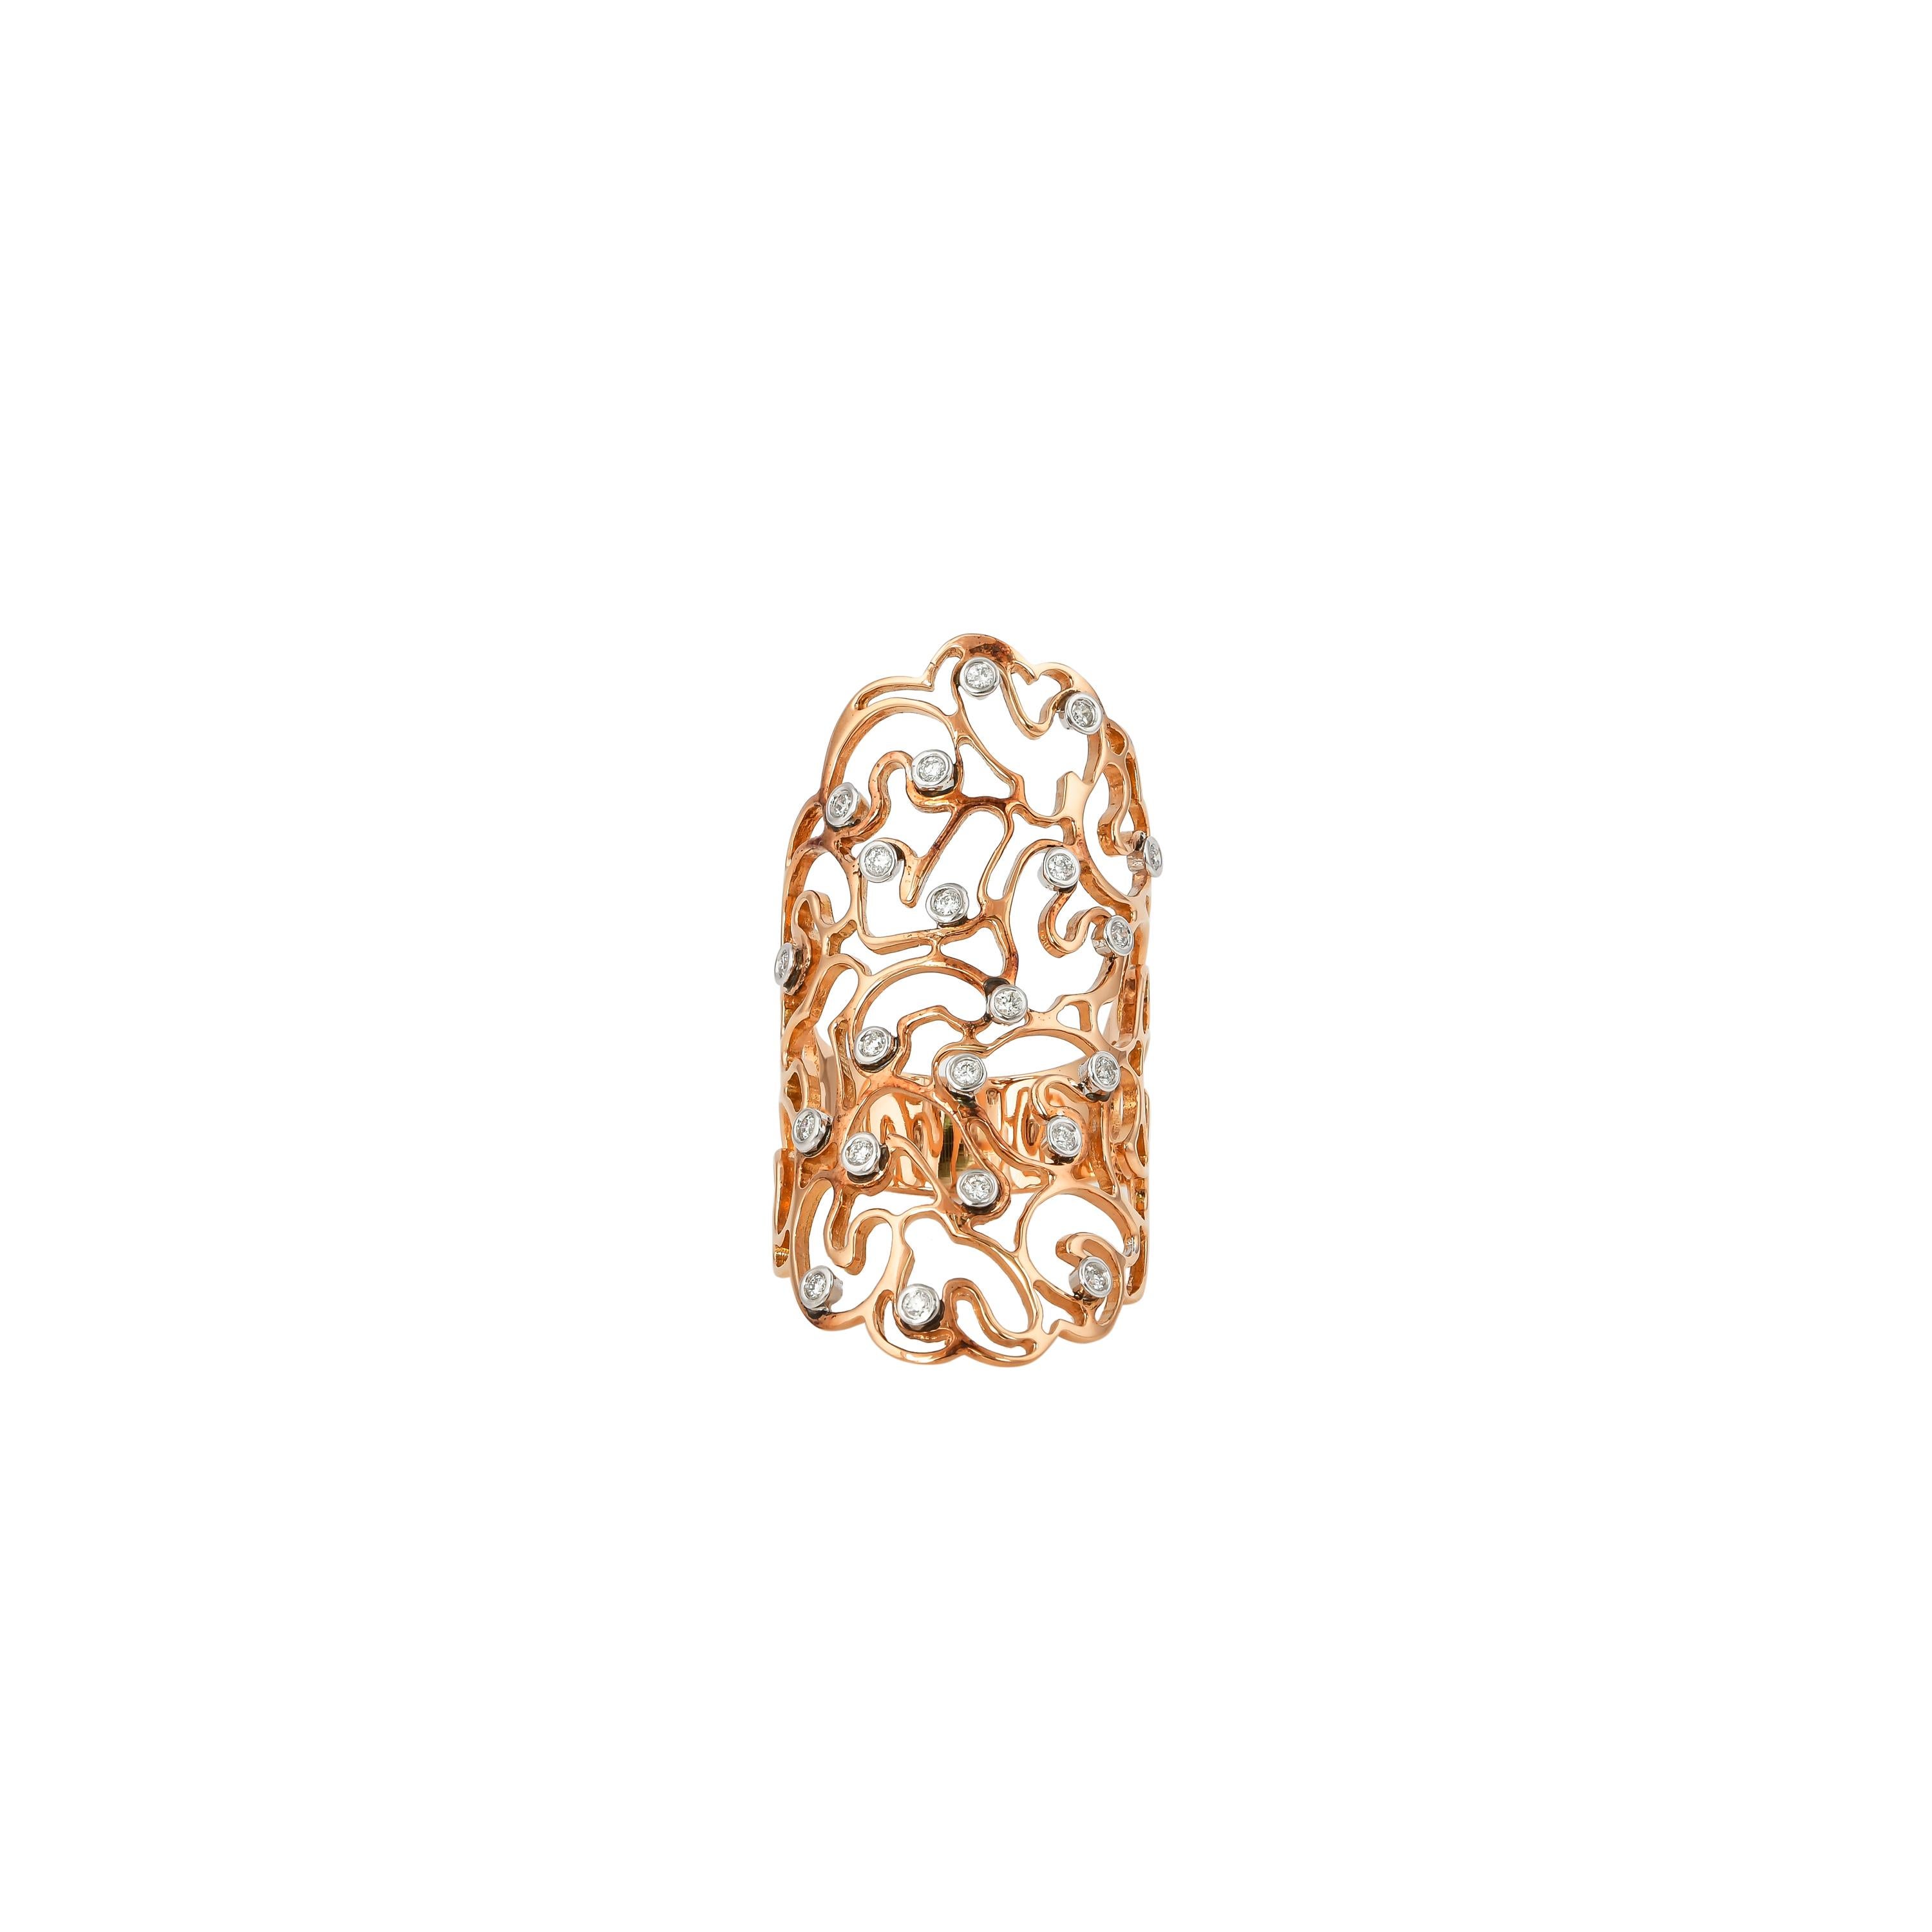 Einzigartige und Designer-Cocktailringe von Sunita Nahata Fine Design.

Klassischer Diamantring aus 18K Weiß- und Roségold. 

Diamant: 0,207 Karat, 1,30 mm groß, runde Form, Farbe G, Reinheit VS.

Gold: 8,00g, 18K Weiß- und Roségold. 
Ring Größe: US